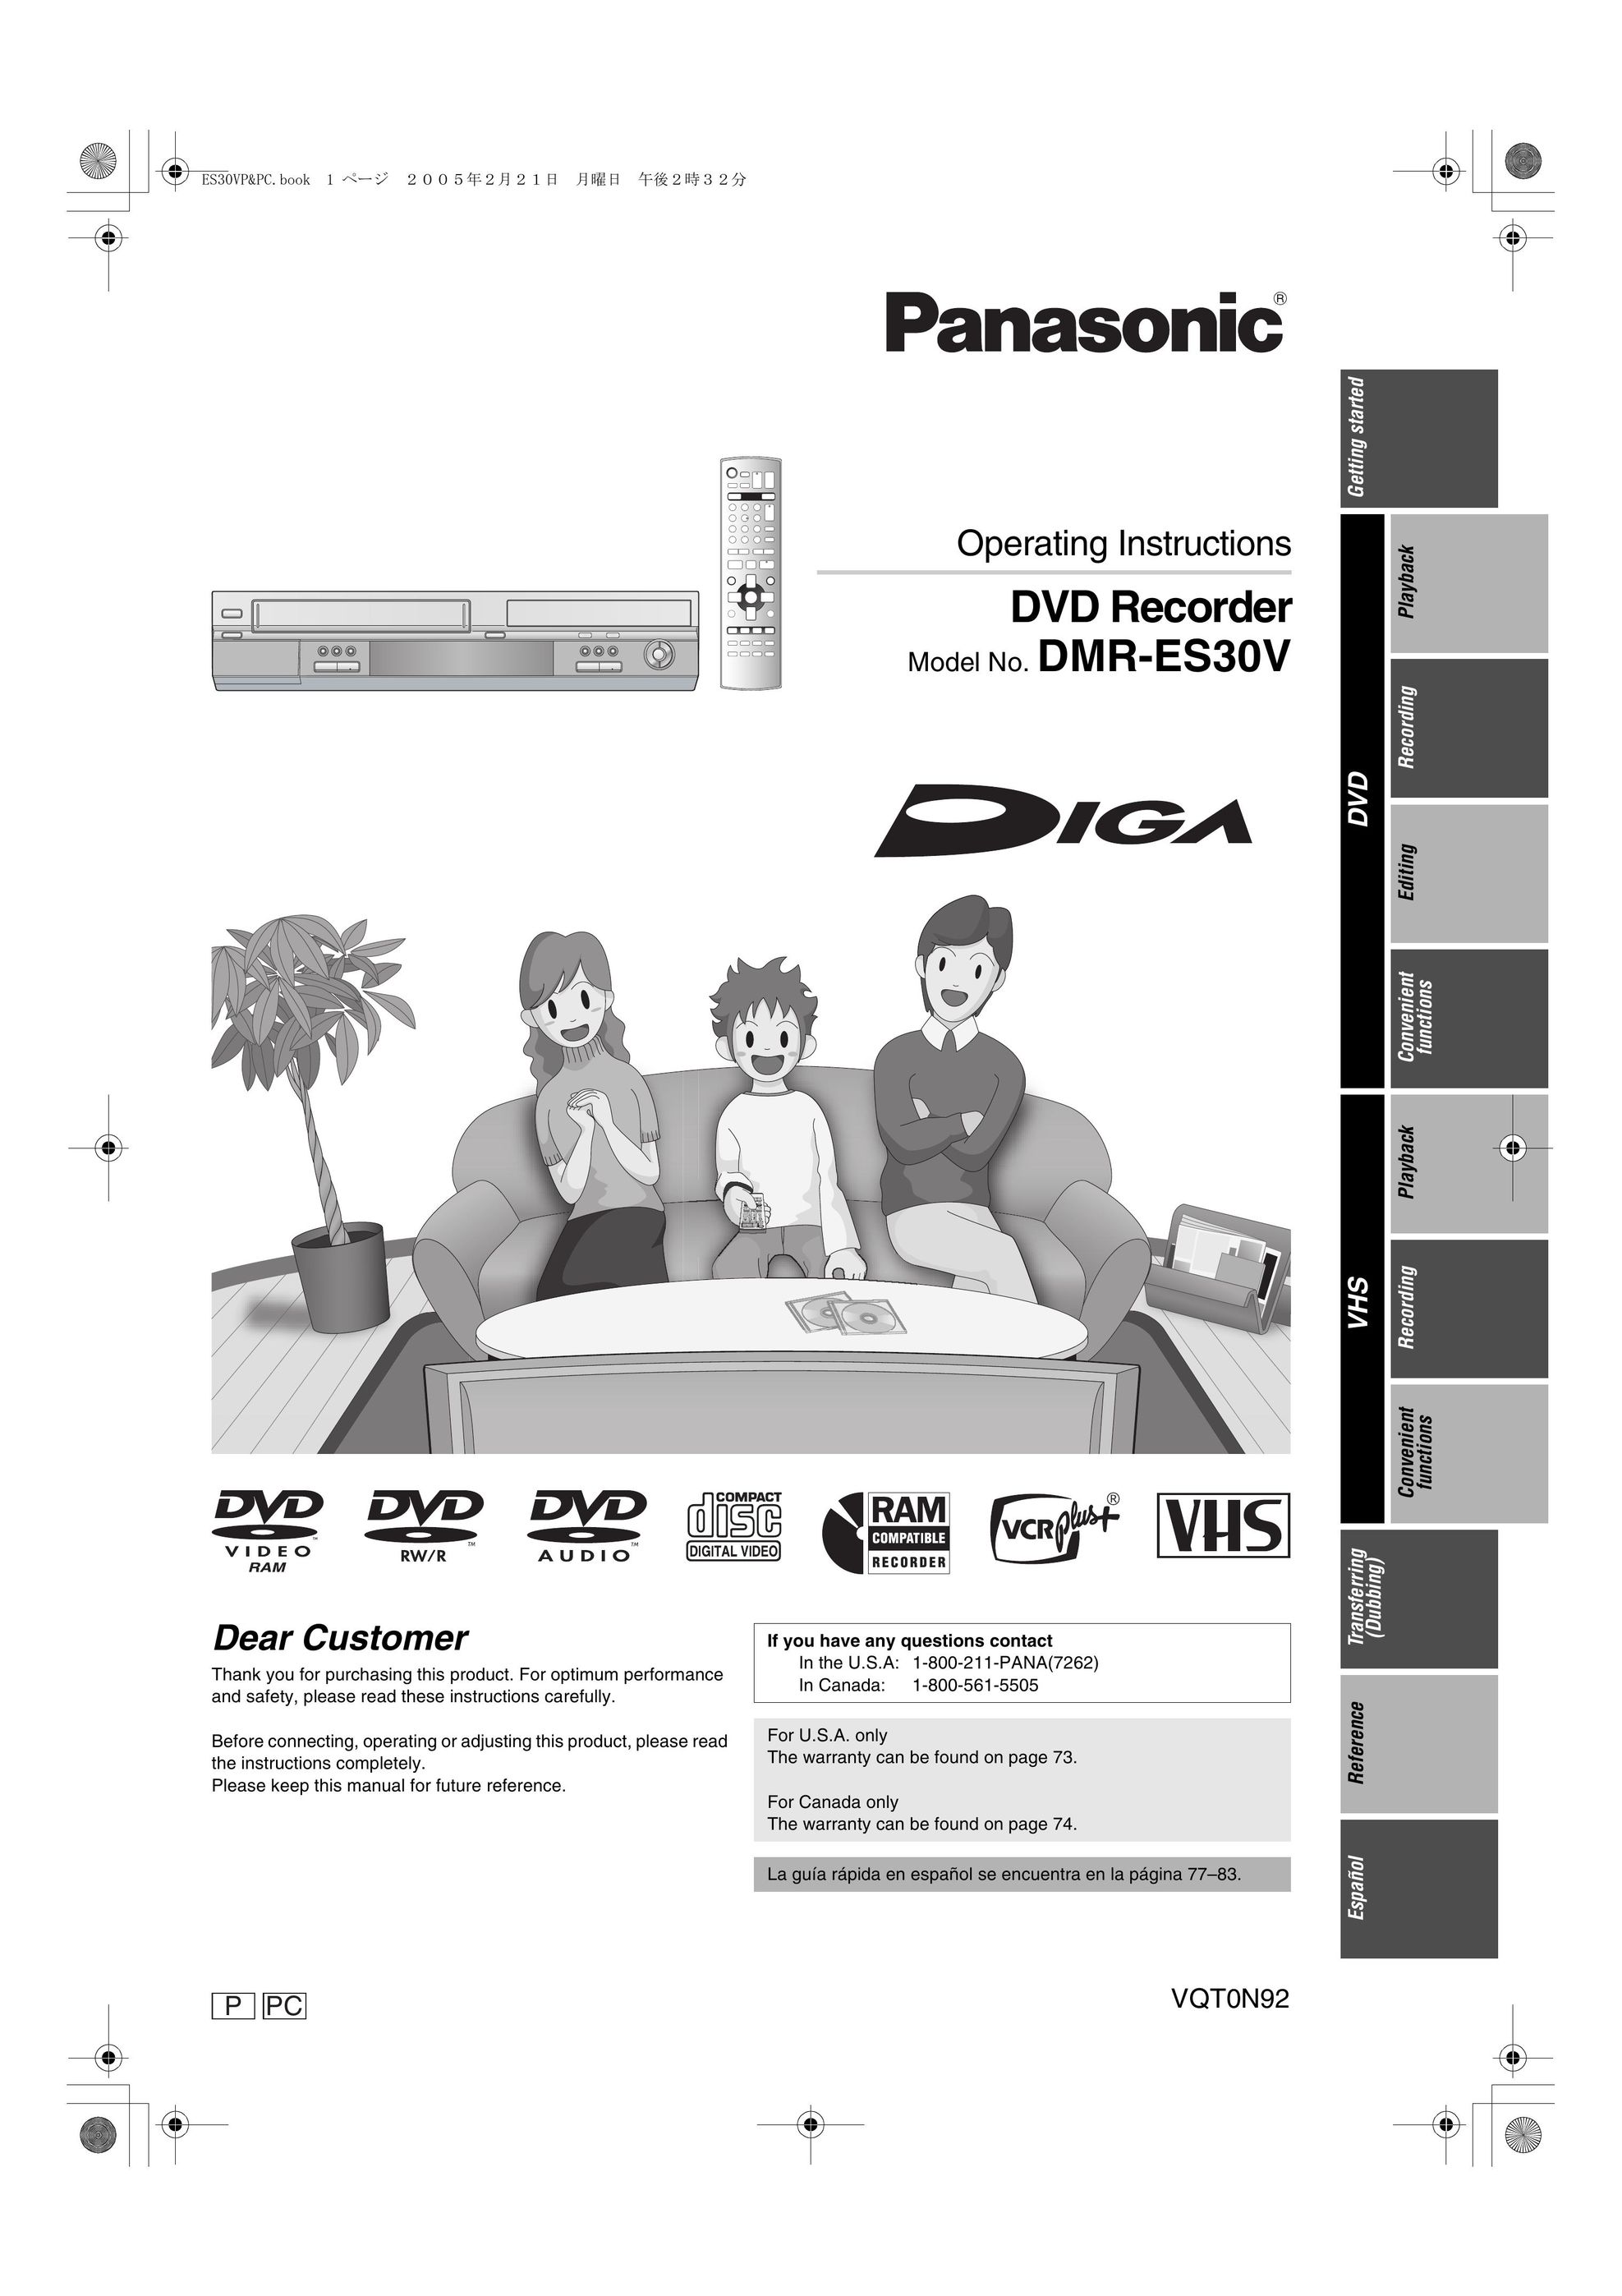 Panasonic DMR-ES30V DVD Recorder User Manual